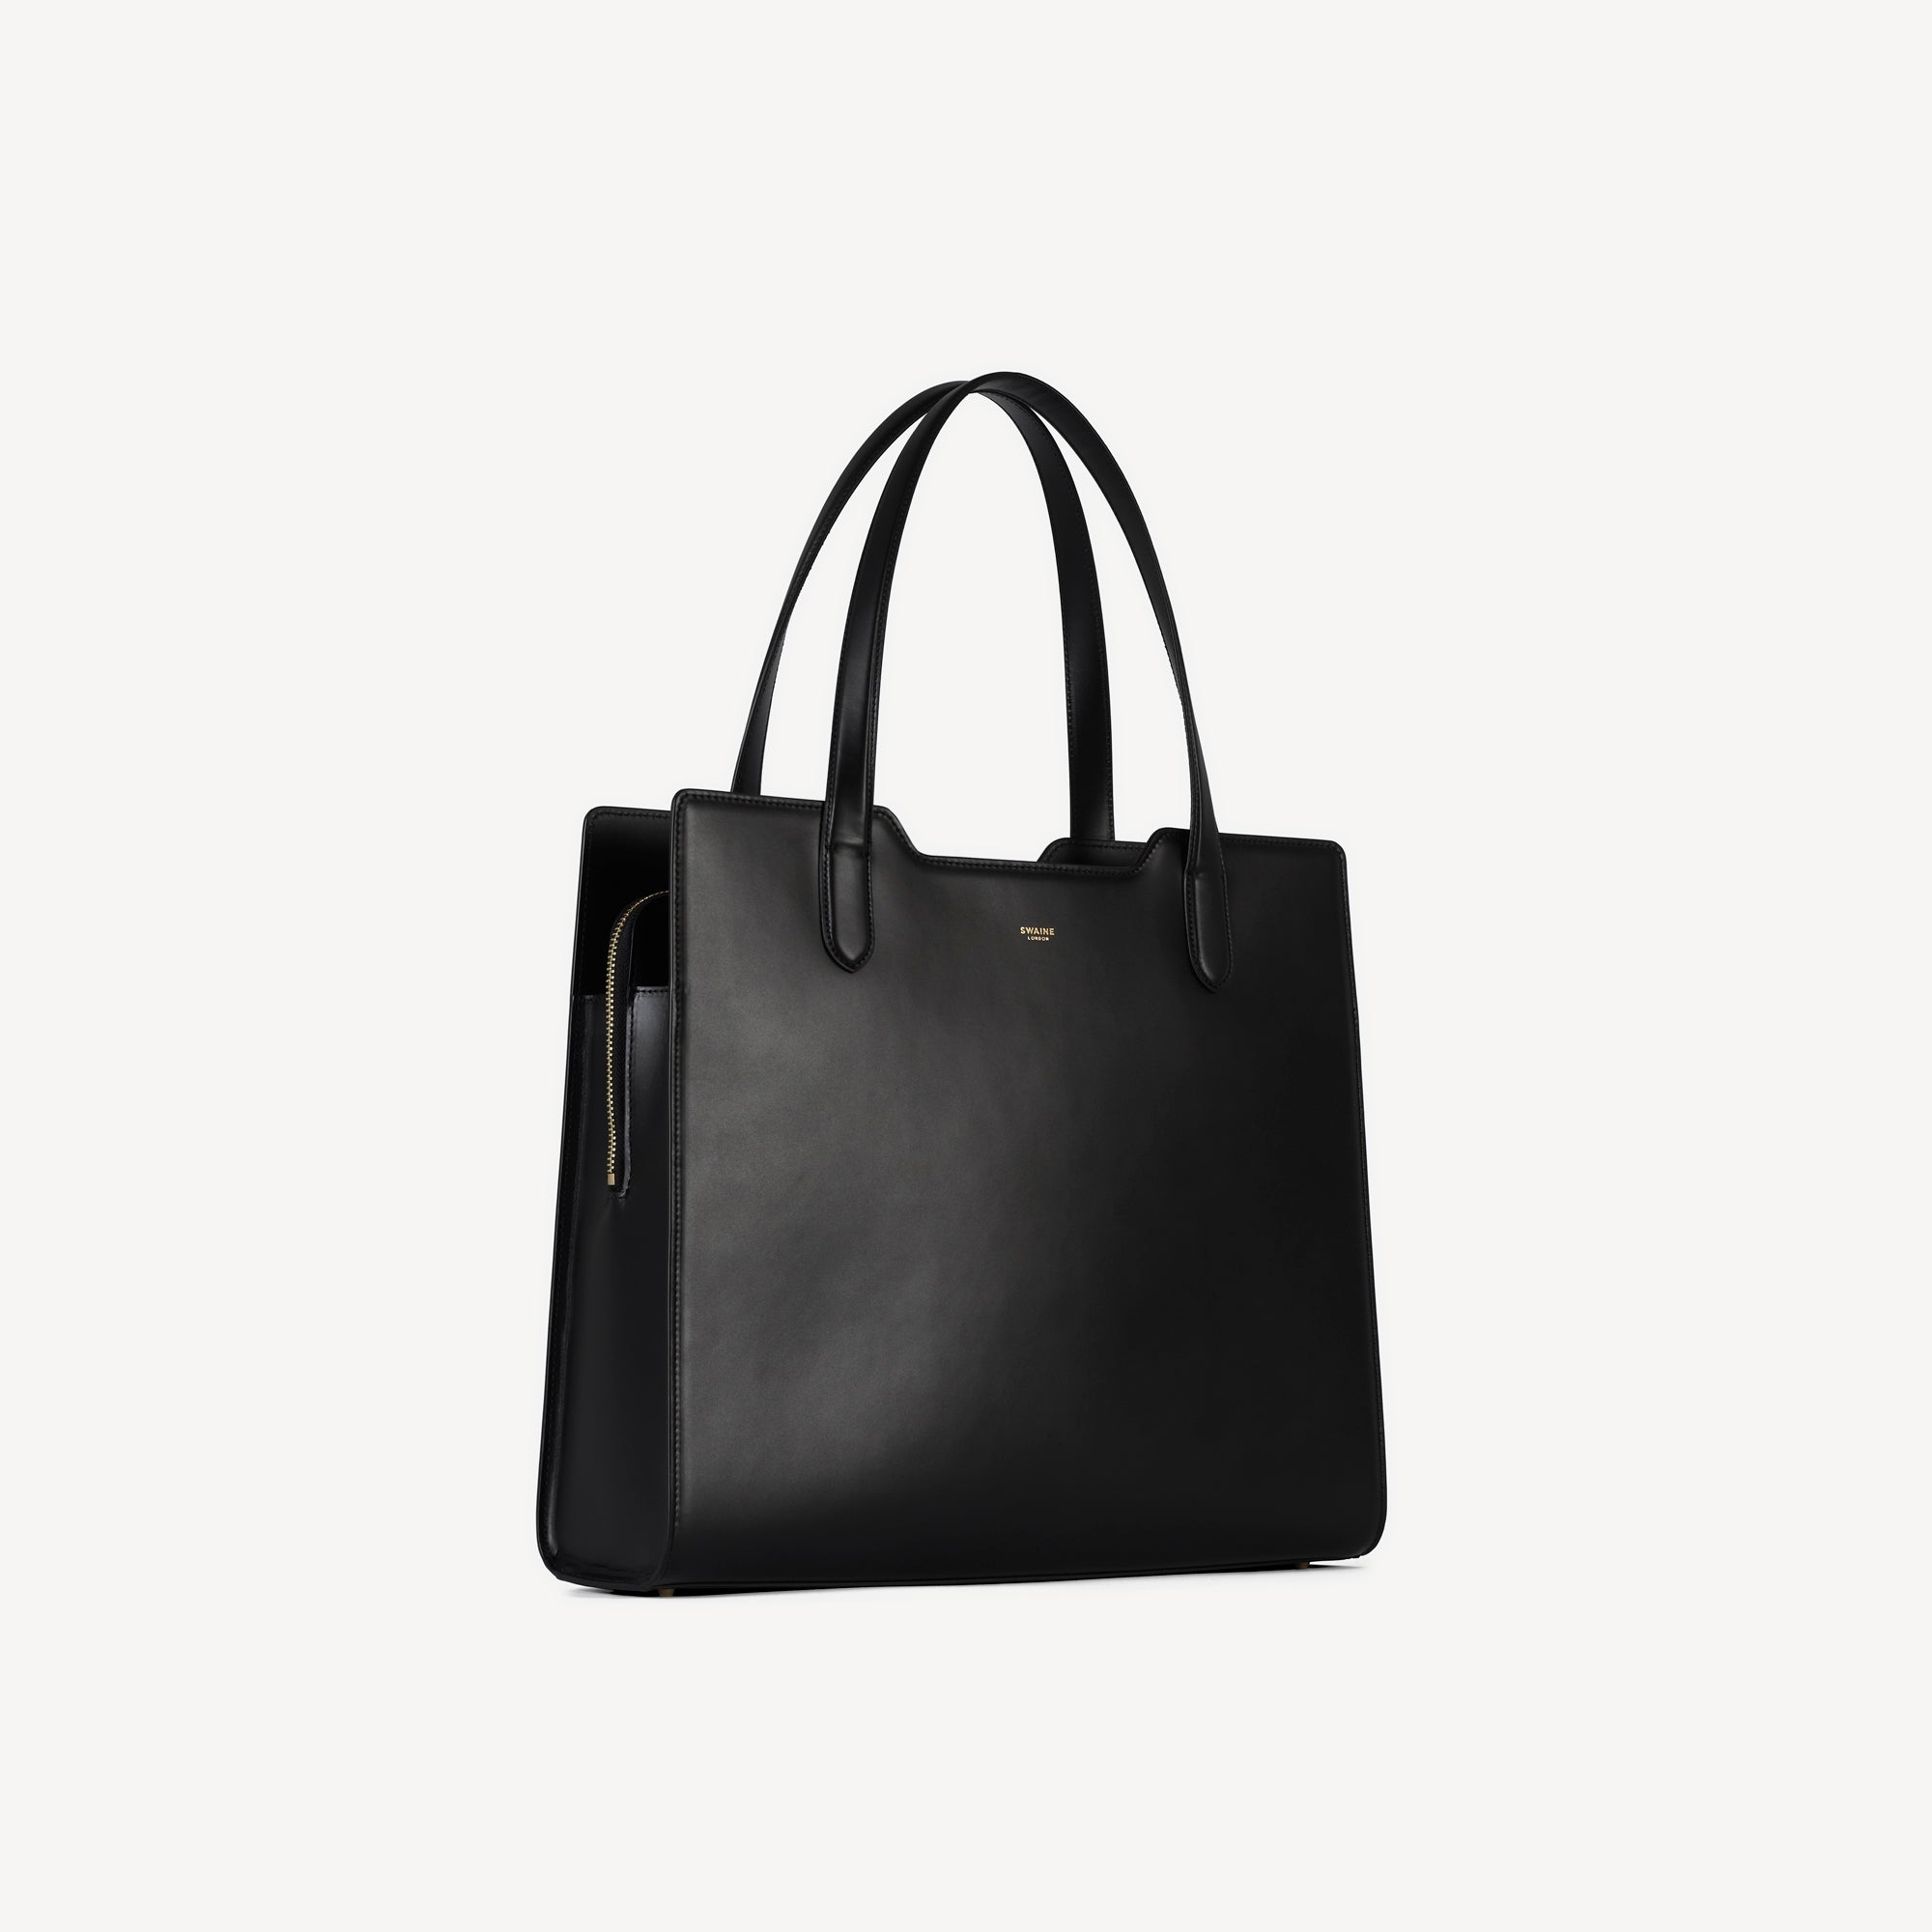 leather handbag structured design